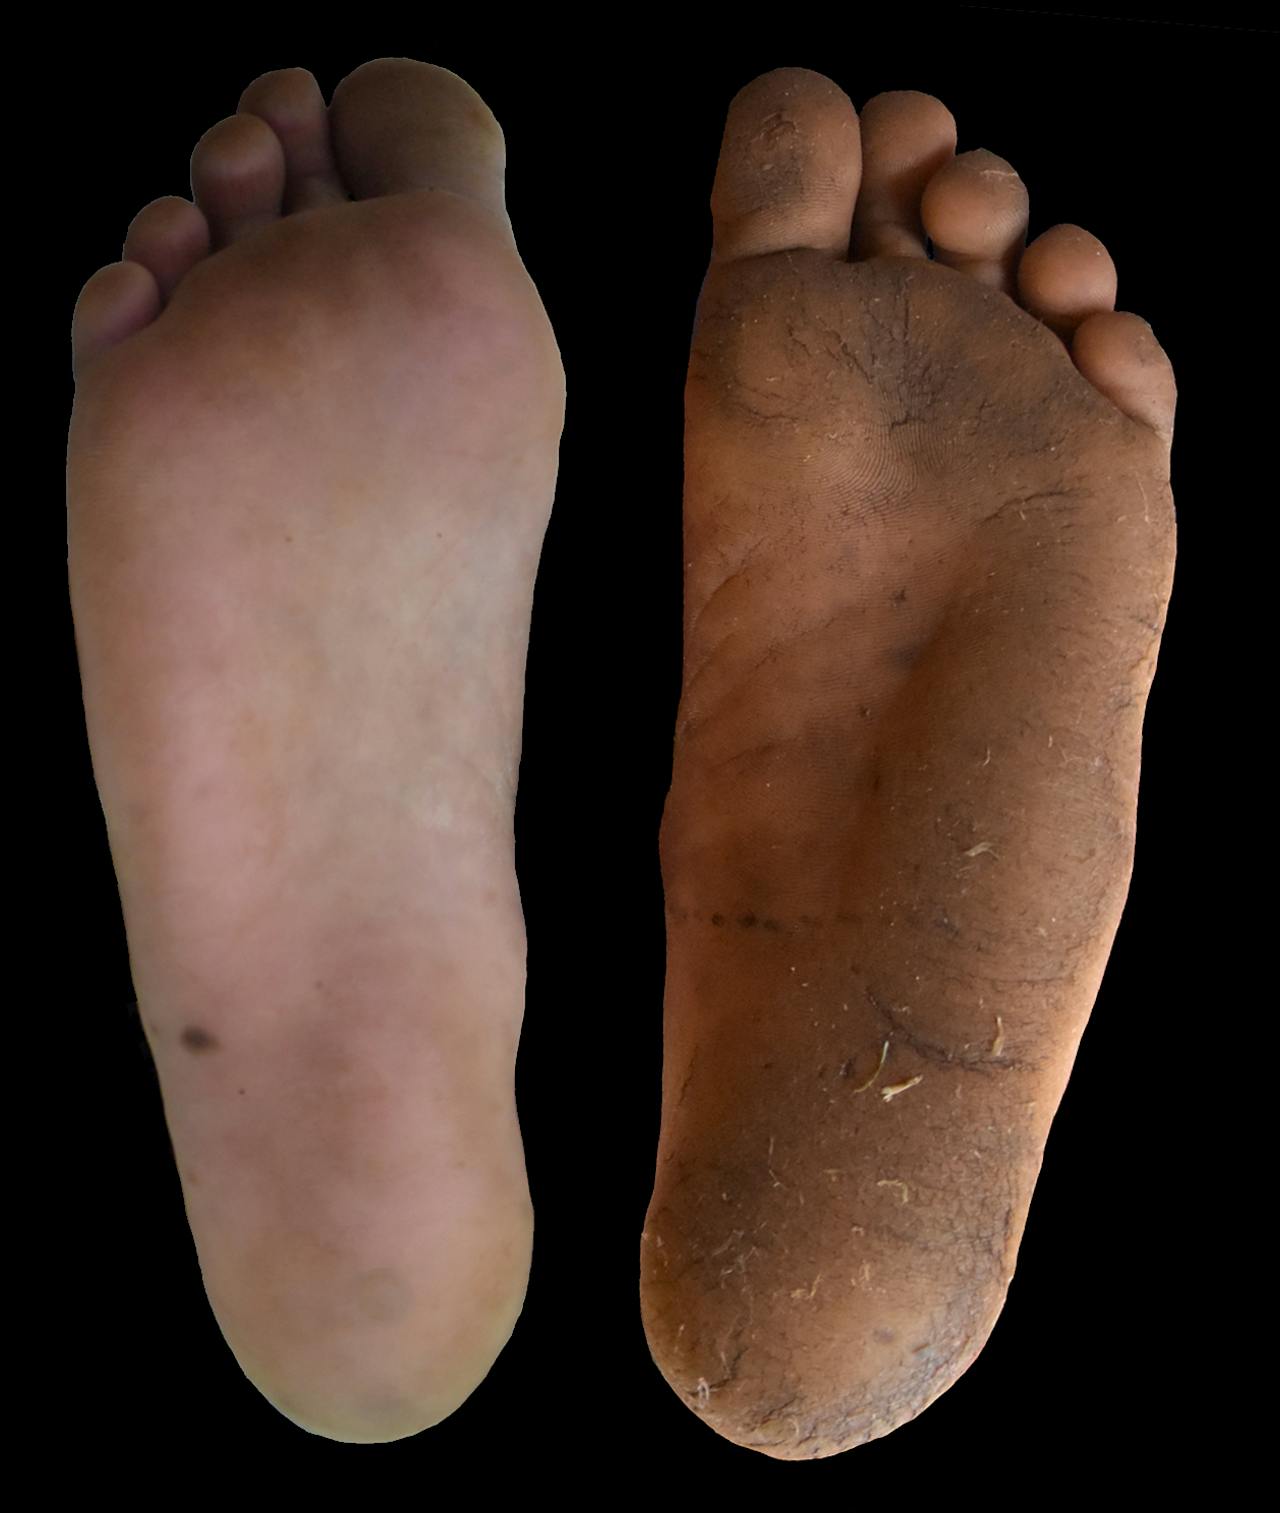 Twee voeten die het verschil laten zien tussen voeten zonder eelt en voeten met eelt.